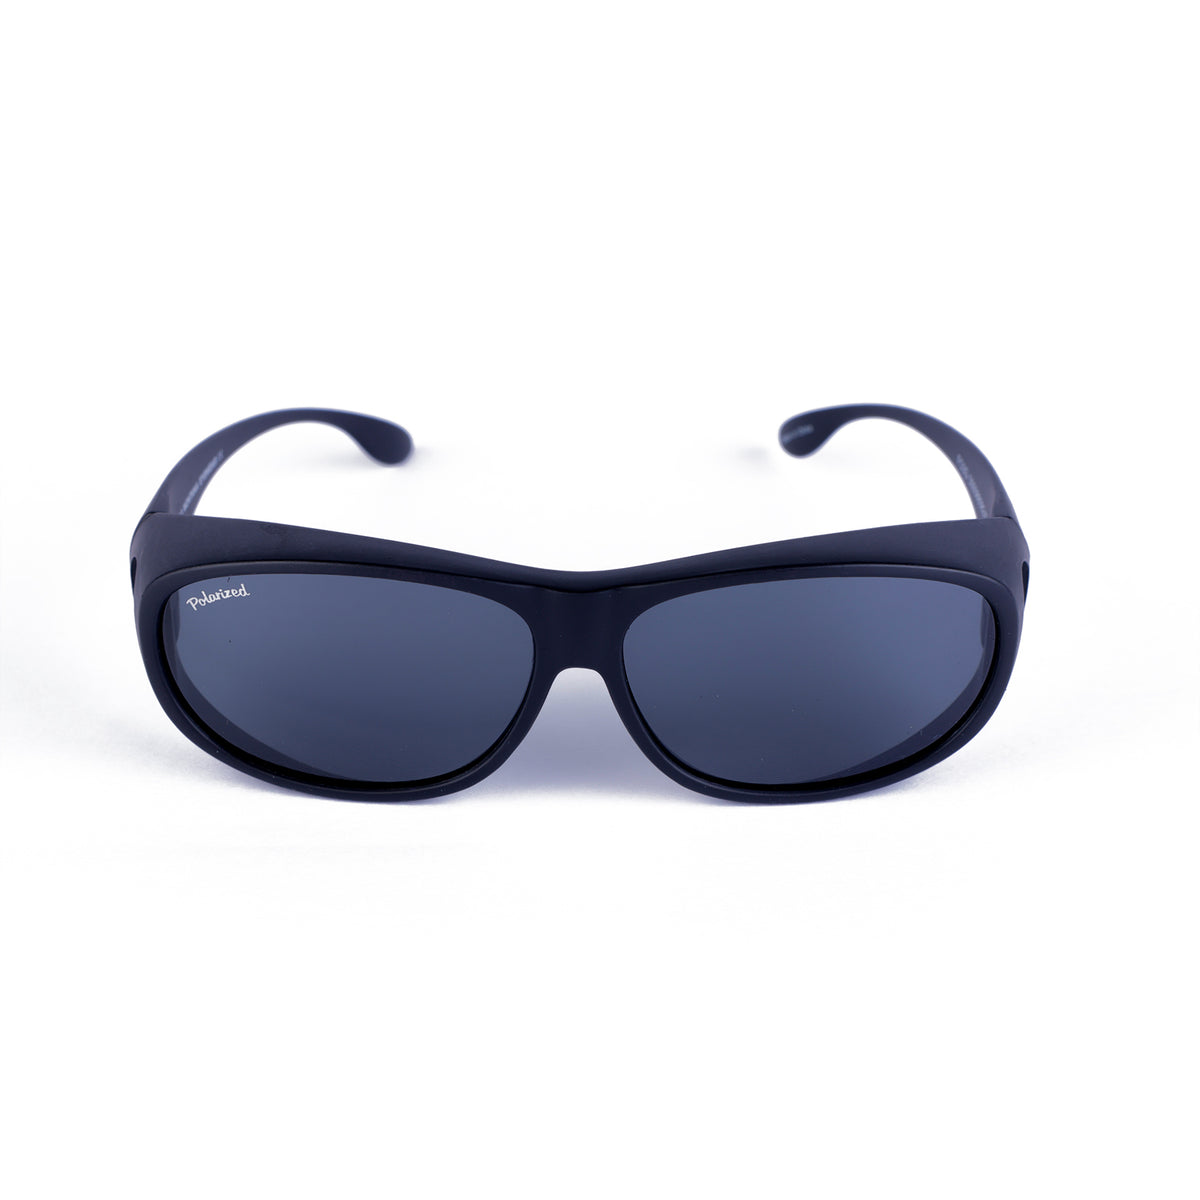 F03 - Solbriller med optisk plass